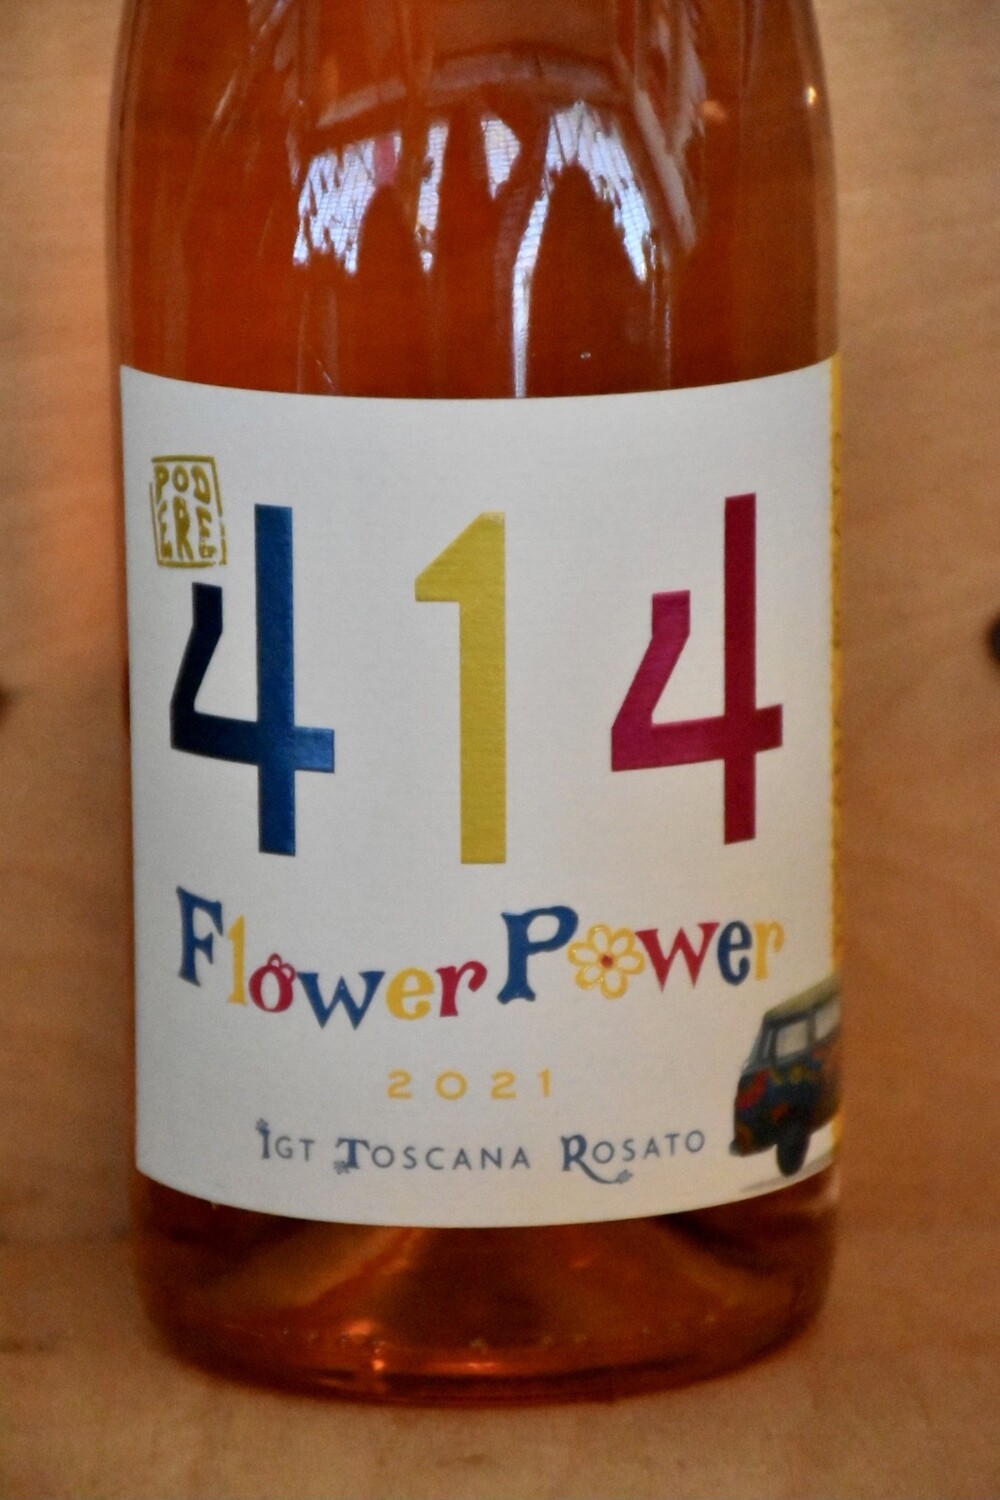 Podere 414 Flower Power